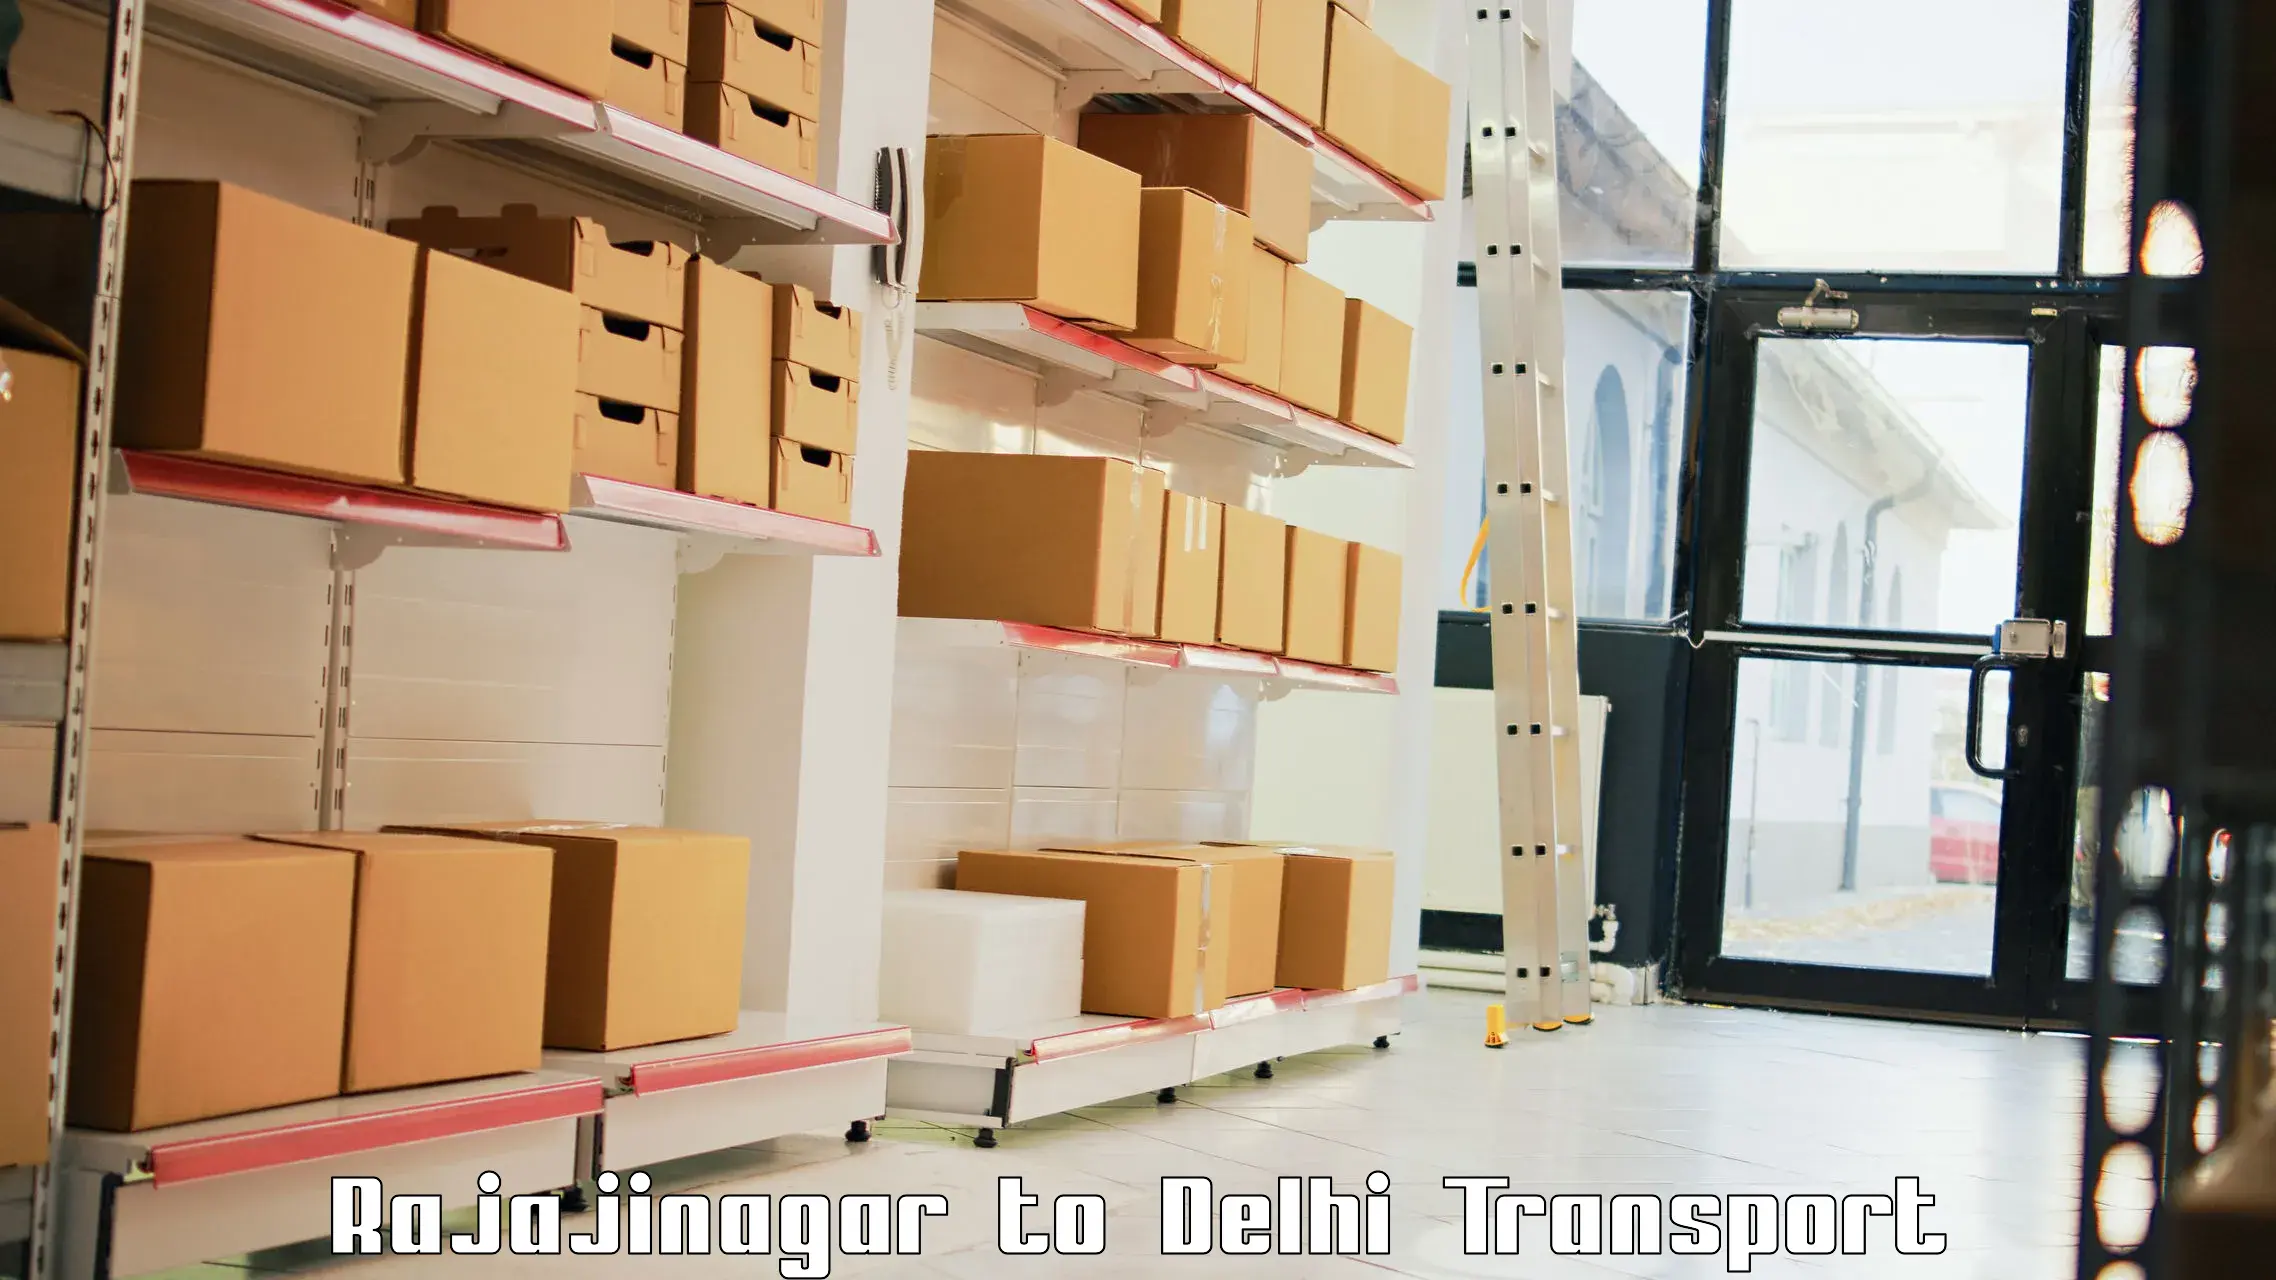 Domestic goods transportation services Rajajinagar to East Delhi